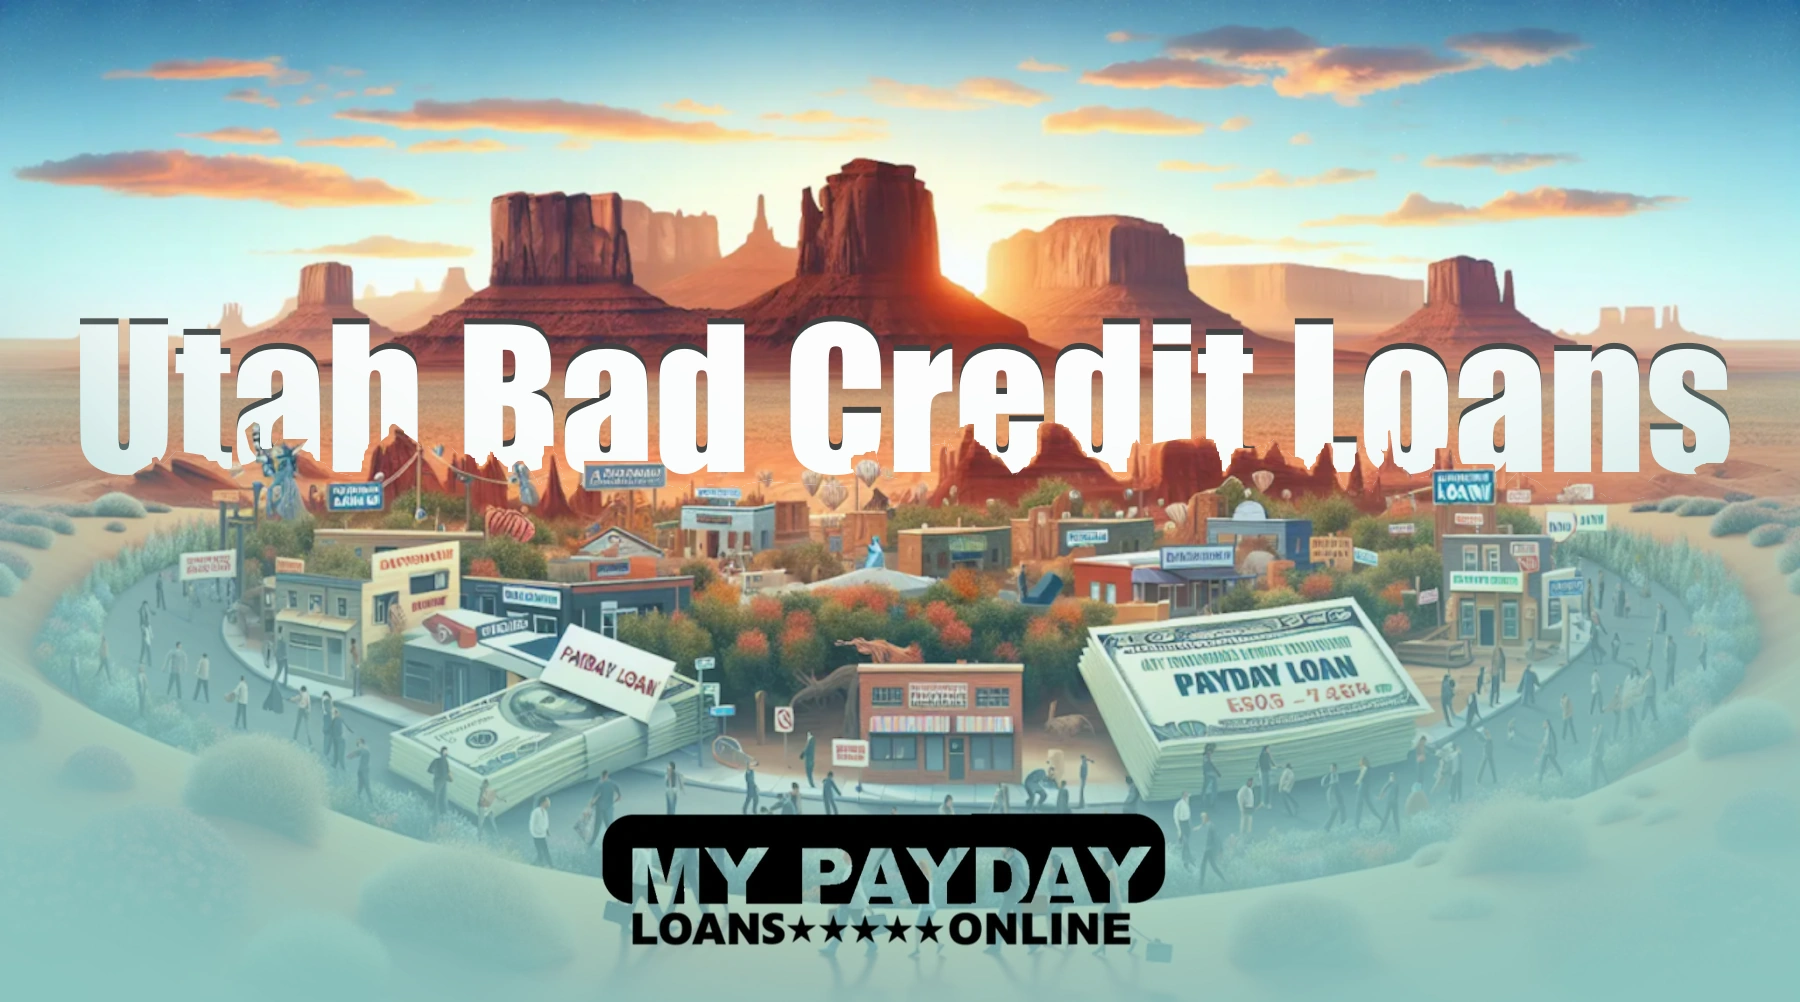 Utah Bad Credit Loans